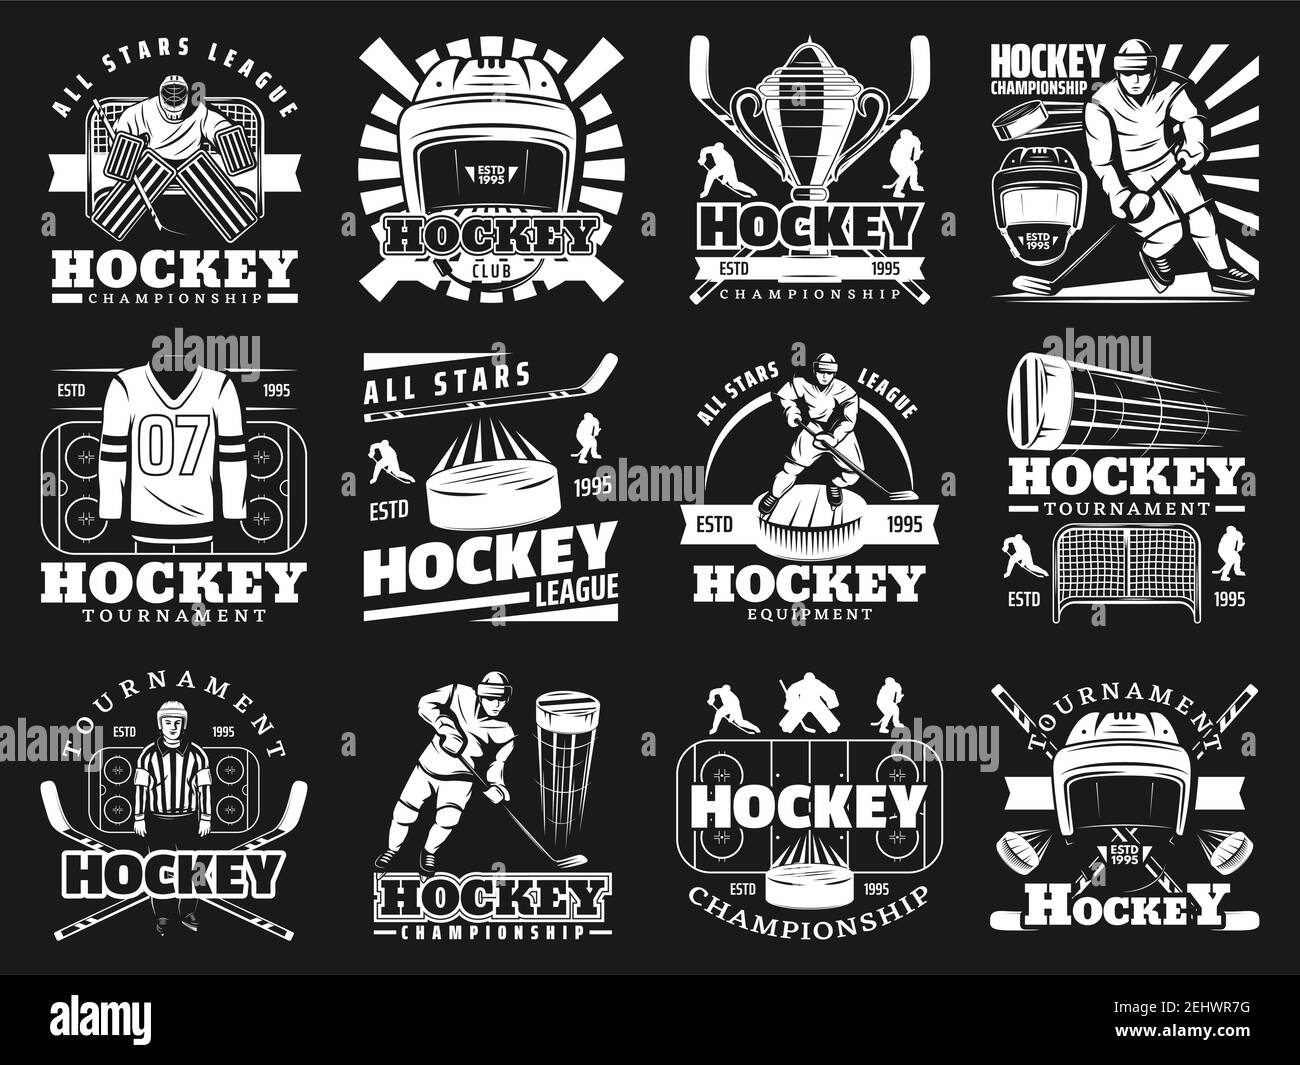 Eishockey-Ikonen mit Spielern und Sportartikeln. Helm und Stock, Puck und Shirt mit Nummer, Pokal und Schiedsrichter, Tore und Sportler auf Schlittschuhen. Te Stock Vektor